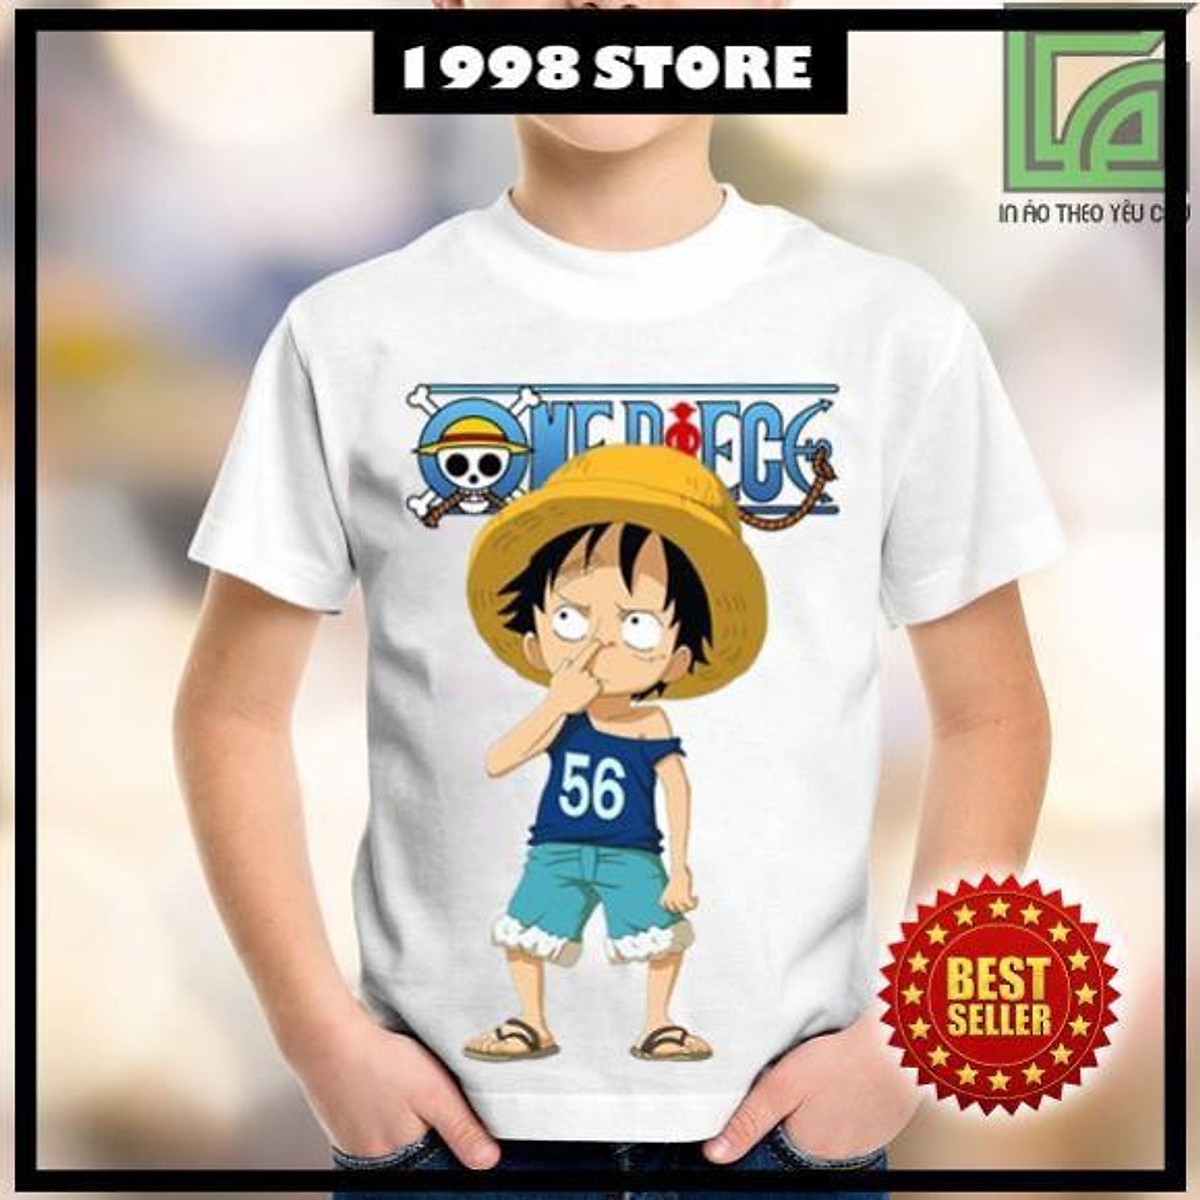 Áo thun One Piece Chibi Luffy là sản phẩm đang được rất nhiều bạn trẻ ưa chuộng. Với hình ảnh Chibi Luffy dễ thương trên áo, sẽ khiến bạn trở thành tâm điểm chú ý của mọi người. Đặc biệt, áo sẽ giữ cho bạn luôn thoải mái trong mùa hè oi bức.